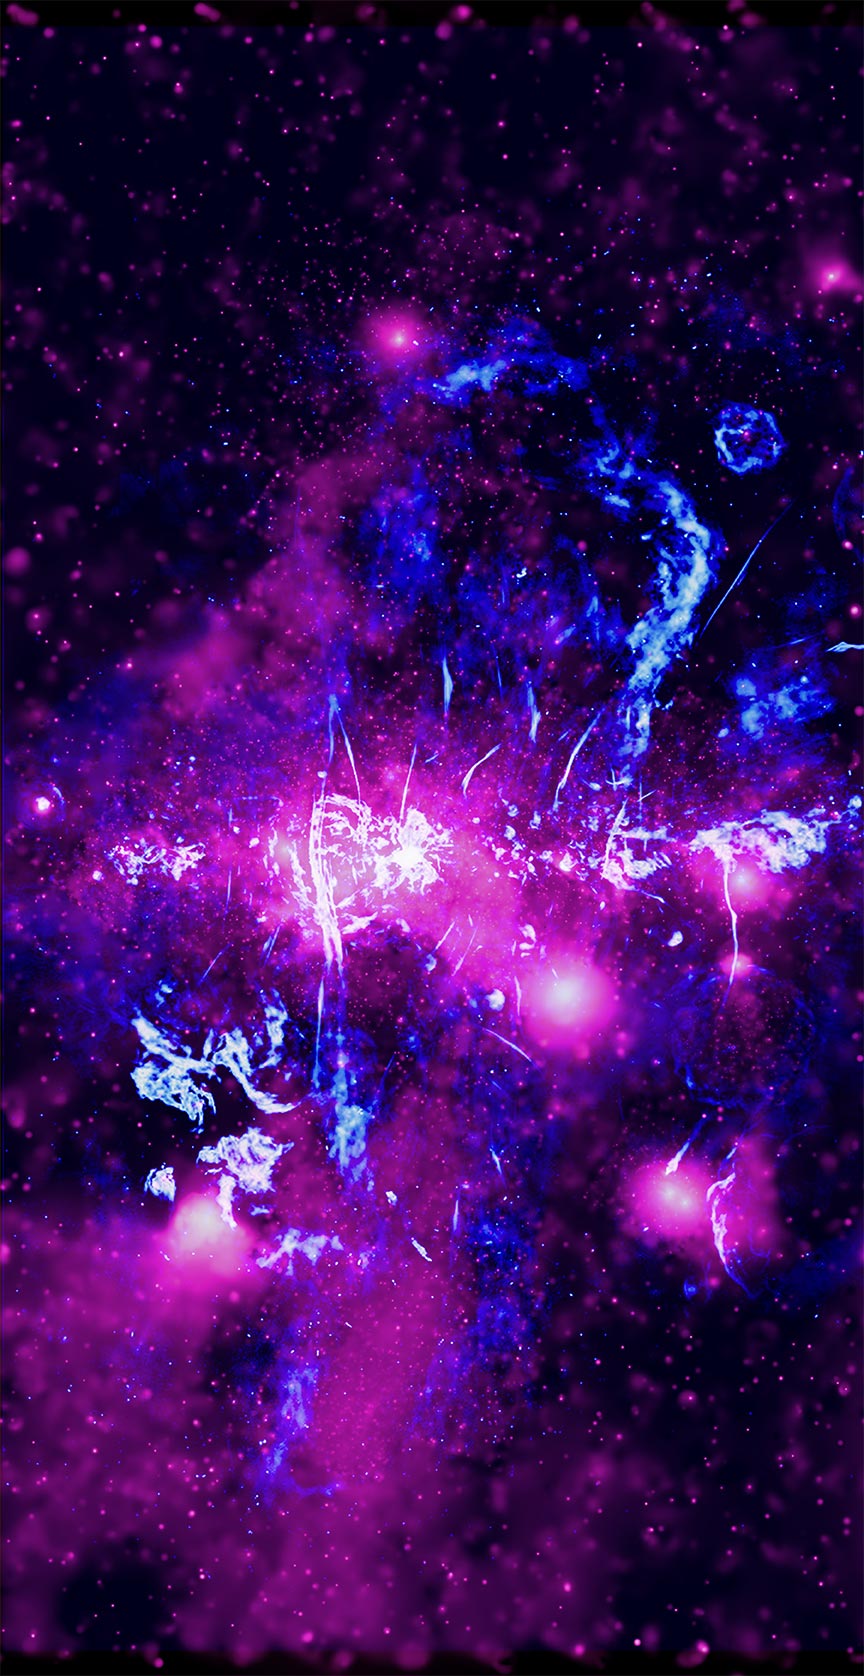 Zdjęcie rentgenowskie i radiowe centrum galaktyki